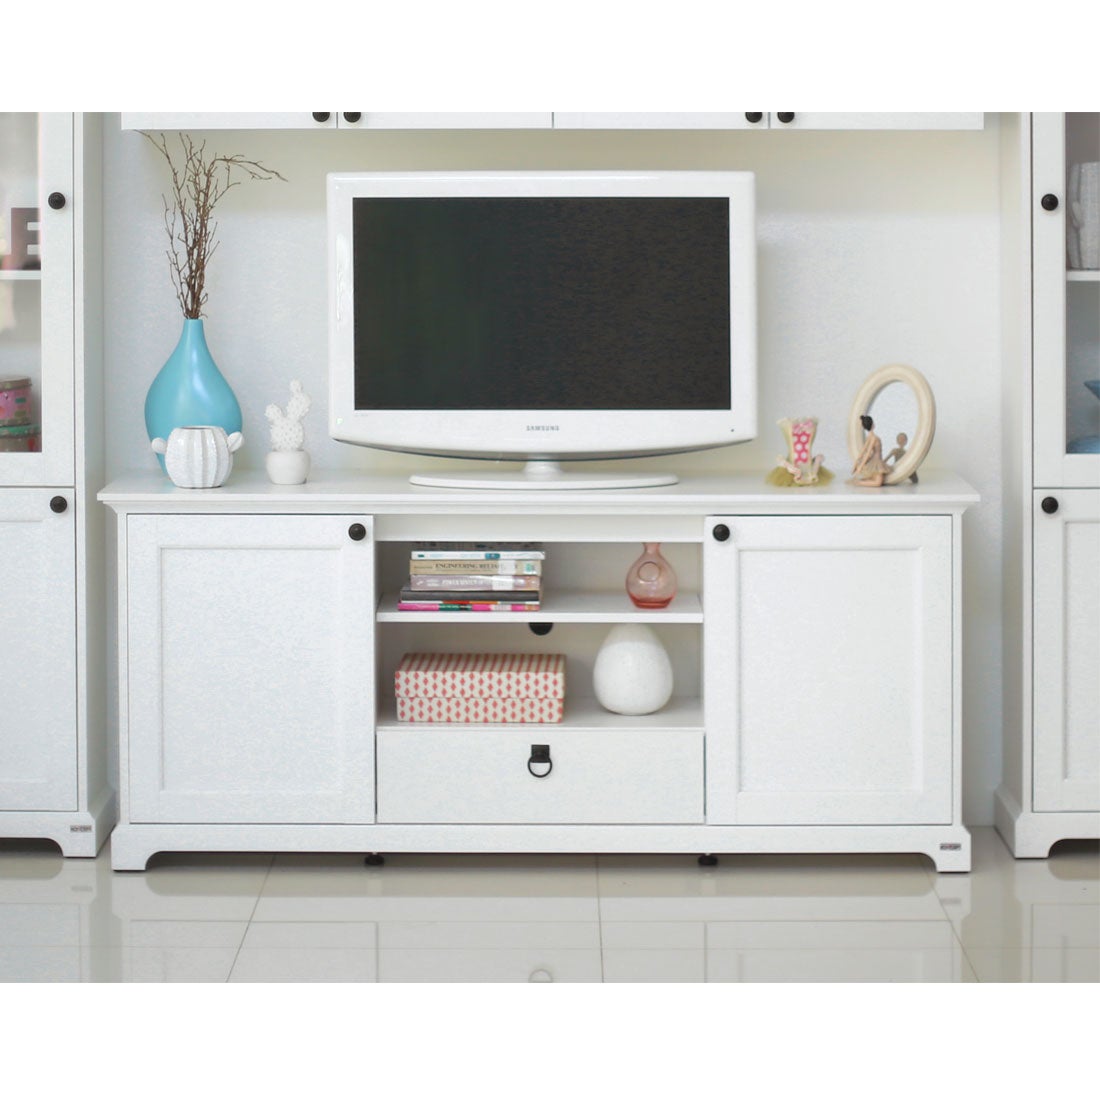 ชุดวางทีวี ไซด์บอร์ด รุ่น Melona สีสีขาว-SB Design Square